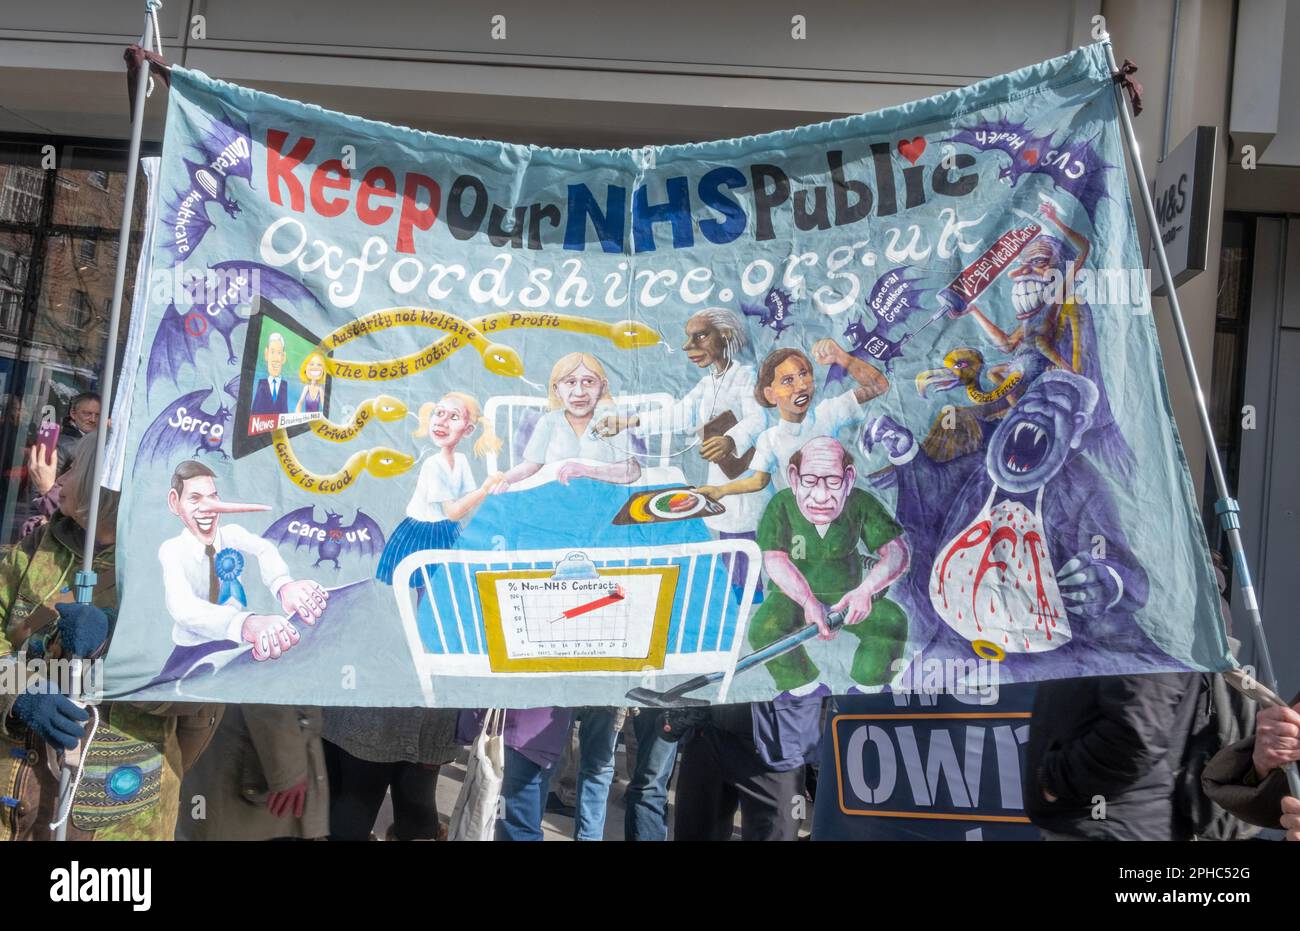 Des signes de protestation à la SOS NHS National Demo à Londres, en faveur de travailleurs de santé en grève et en protestation de la crise provoquée par des coupures de gouvernement. Banque D'Images